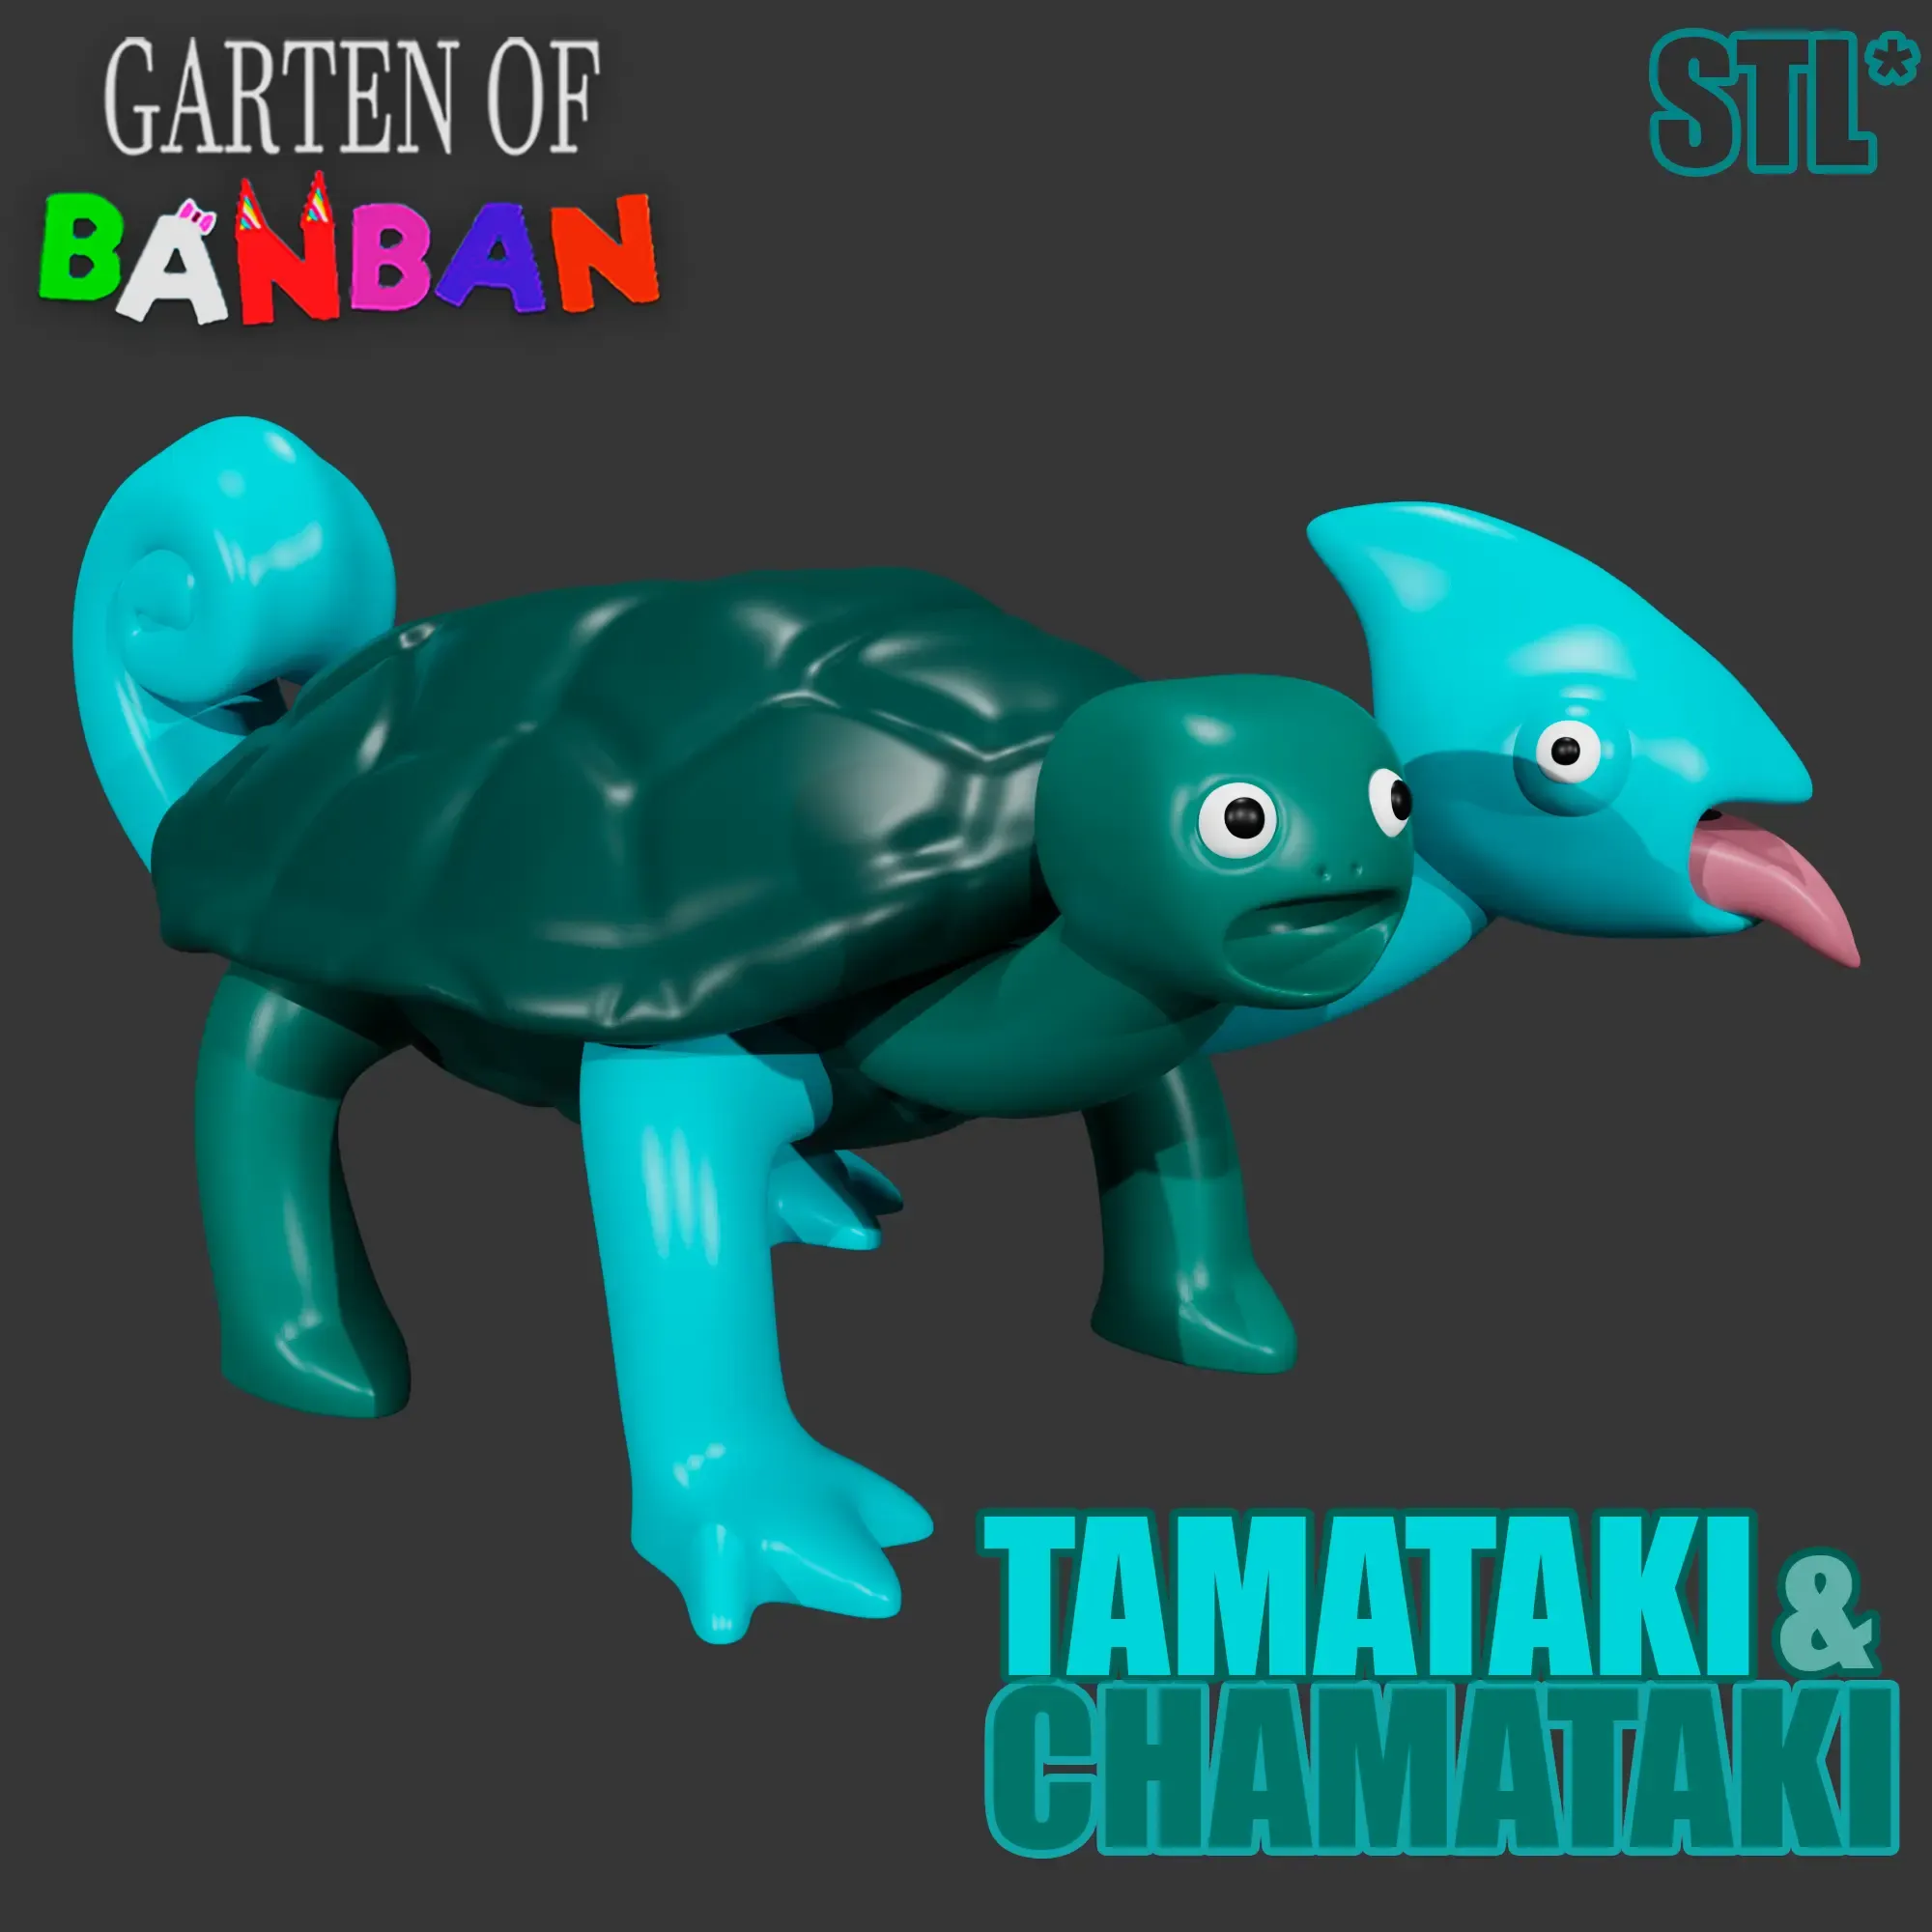 TAMATAKI & CHAMATAKI FROM GARTEN OF BANBAN 3 | FAN ART | BGG